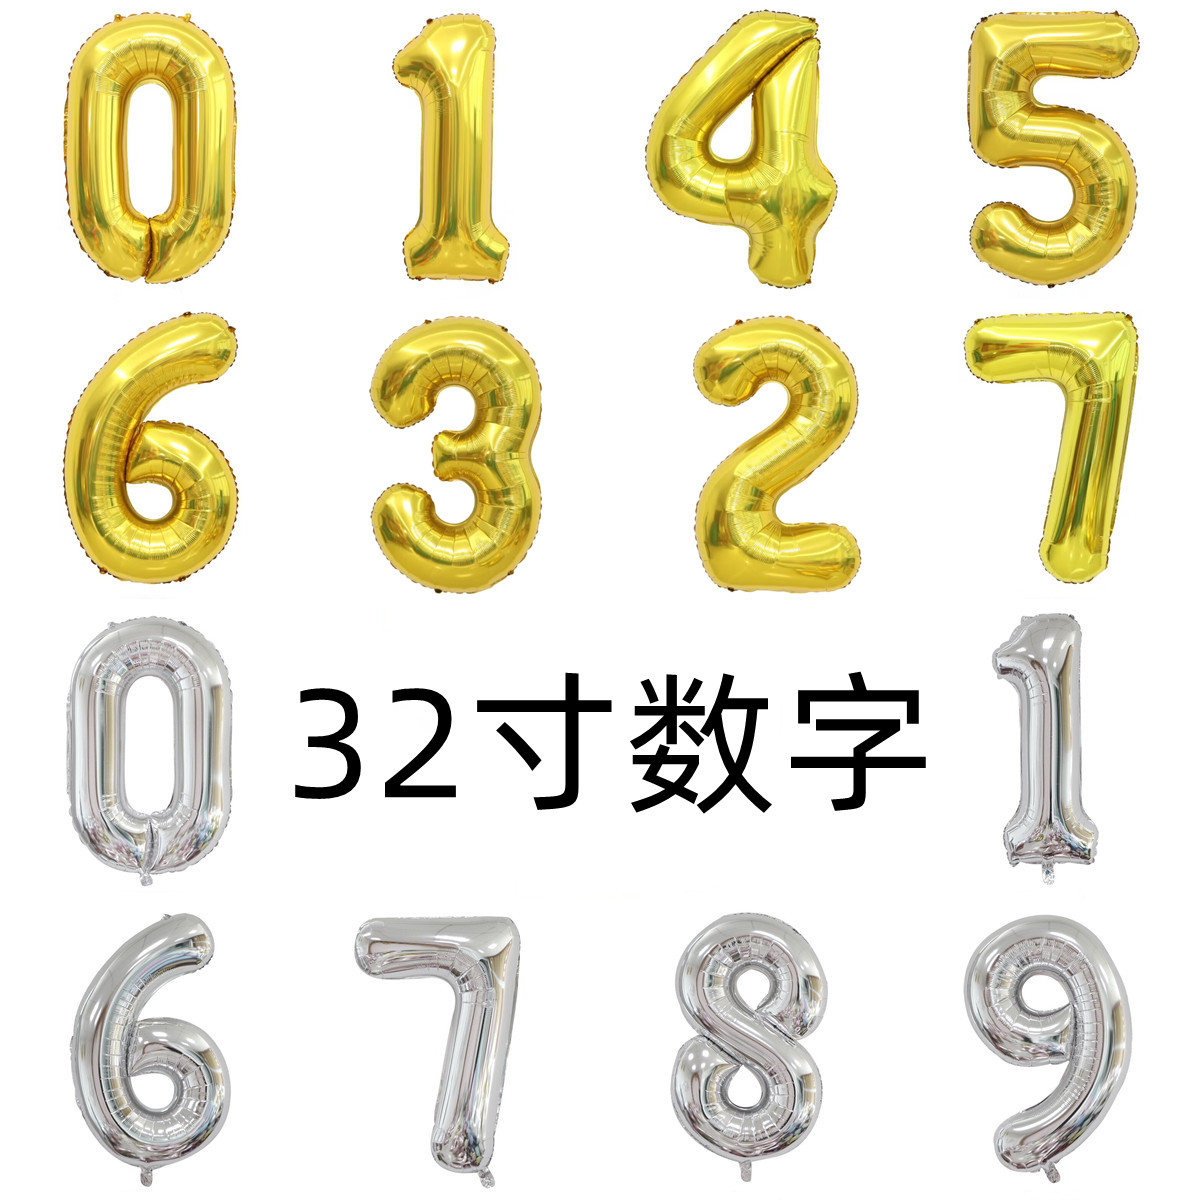 32寸铝箔数字气球中号金色银色生日满月周岁装饰生日派对布置